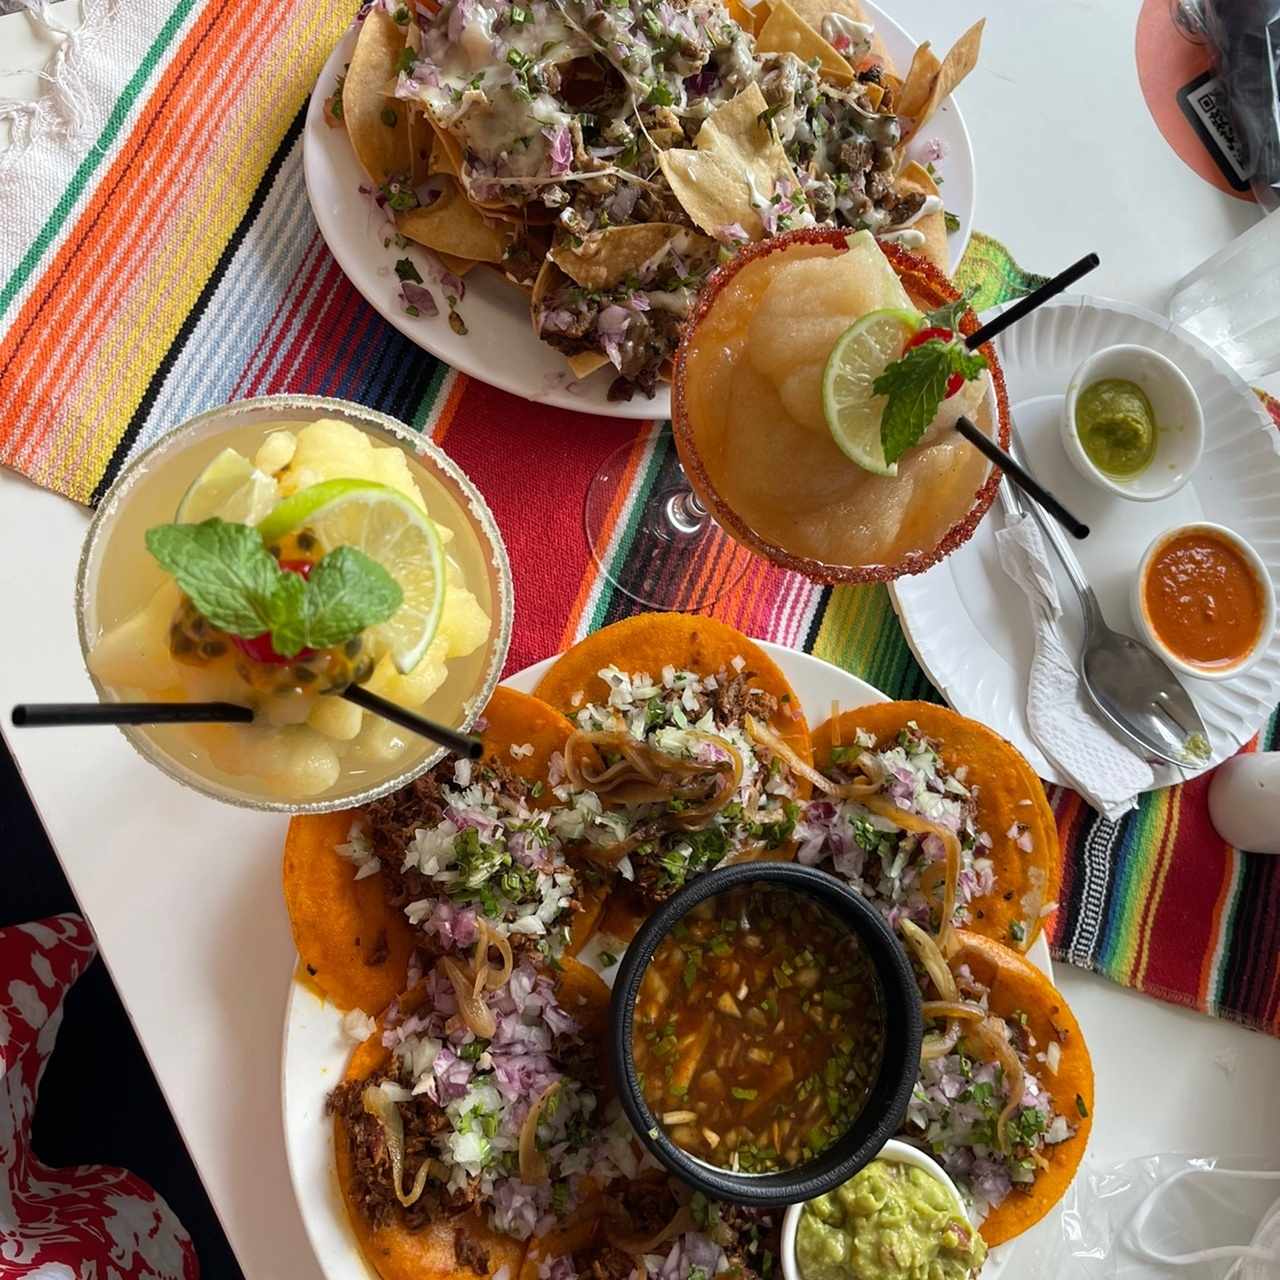 Nachos con carné y bandeja taquera de birria, margarita de maracuyá y tamarindo